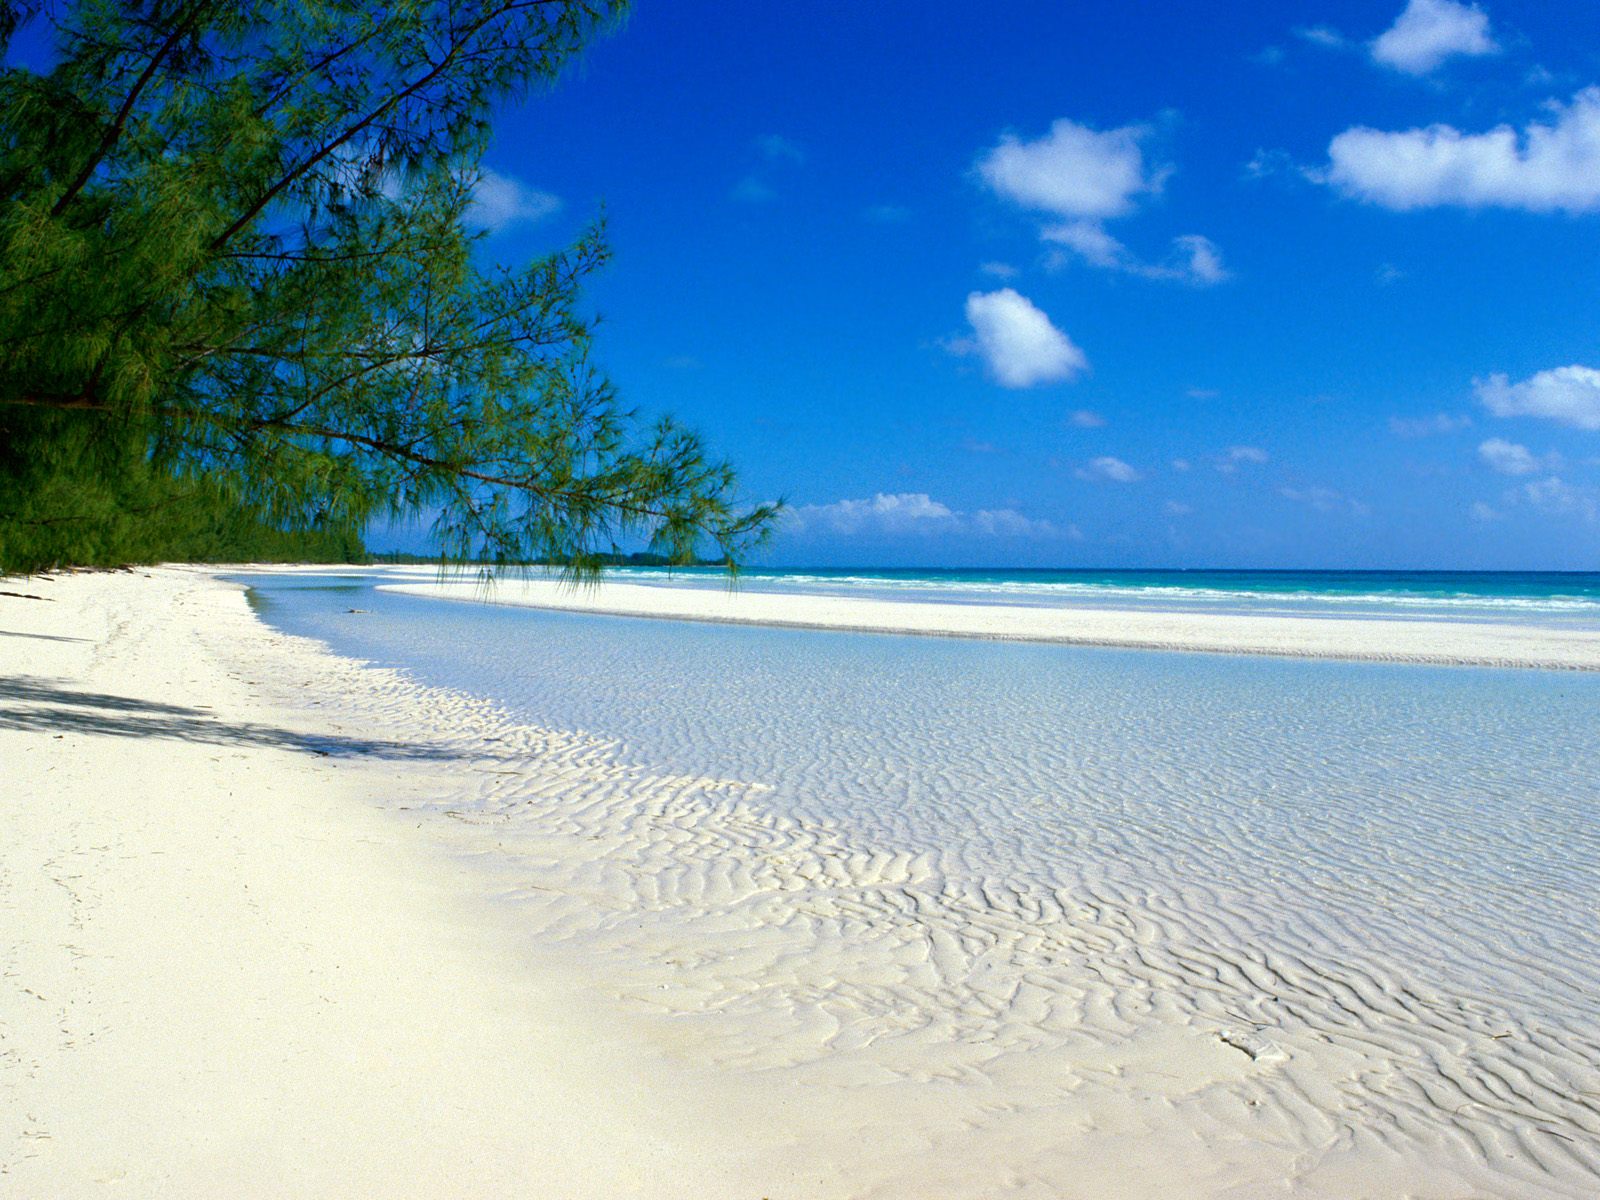 https://blogger.googleusercontent.com/img/b/R29vZ2xl/AVvXsEjbAHprRz1k0oCDt1WJ-Mxee1DIHhamiWLS4Afw7aqimEpYVLRxSIB2v8DTMEBygLpGjCc69sskiqztYZYdUjzumTG6BDrgTpCbsyn5qHAQaUUBpp4K2x5EtAyn-eqODmmdK8CbnrJniDk/s1600/bahamas+beach.jpg